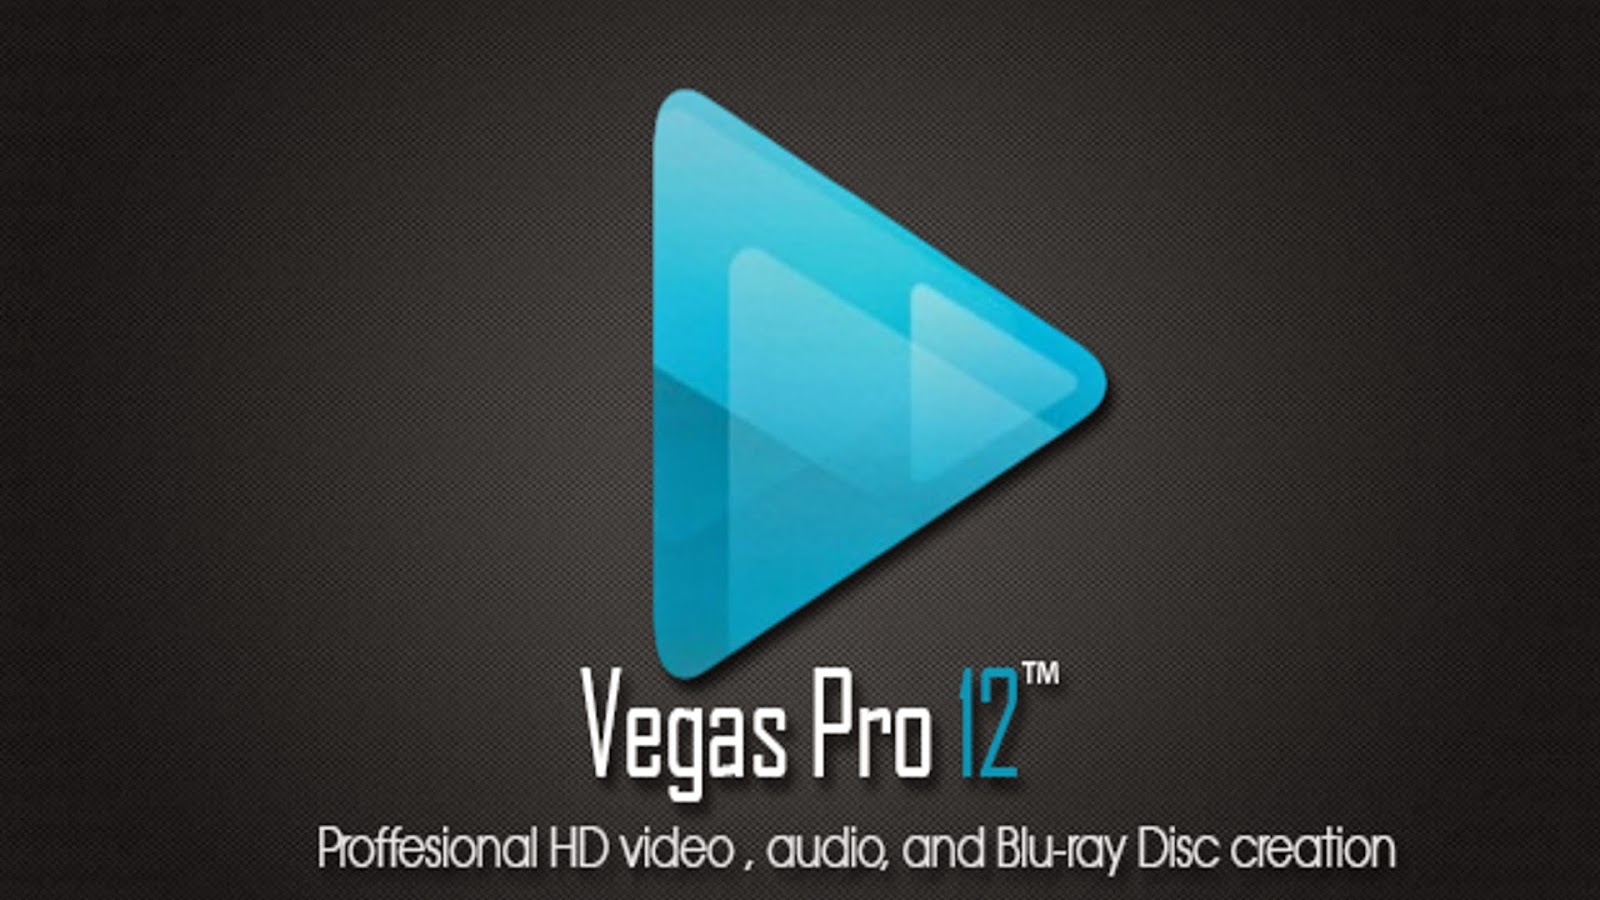 Sony Vegas Pro 12 Cracked By Exus